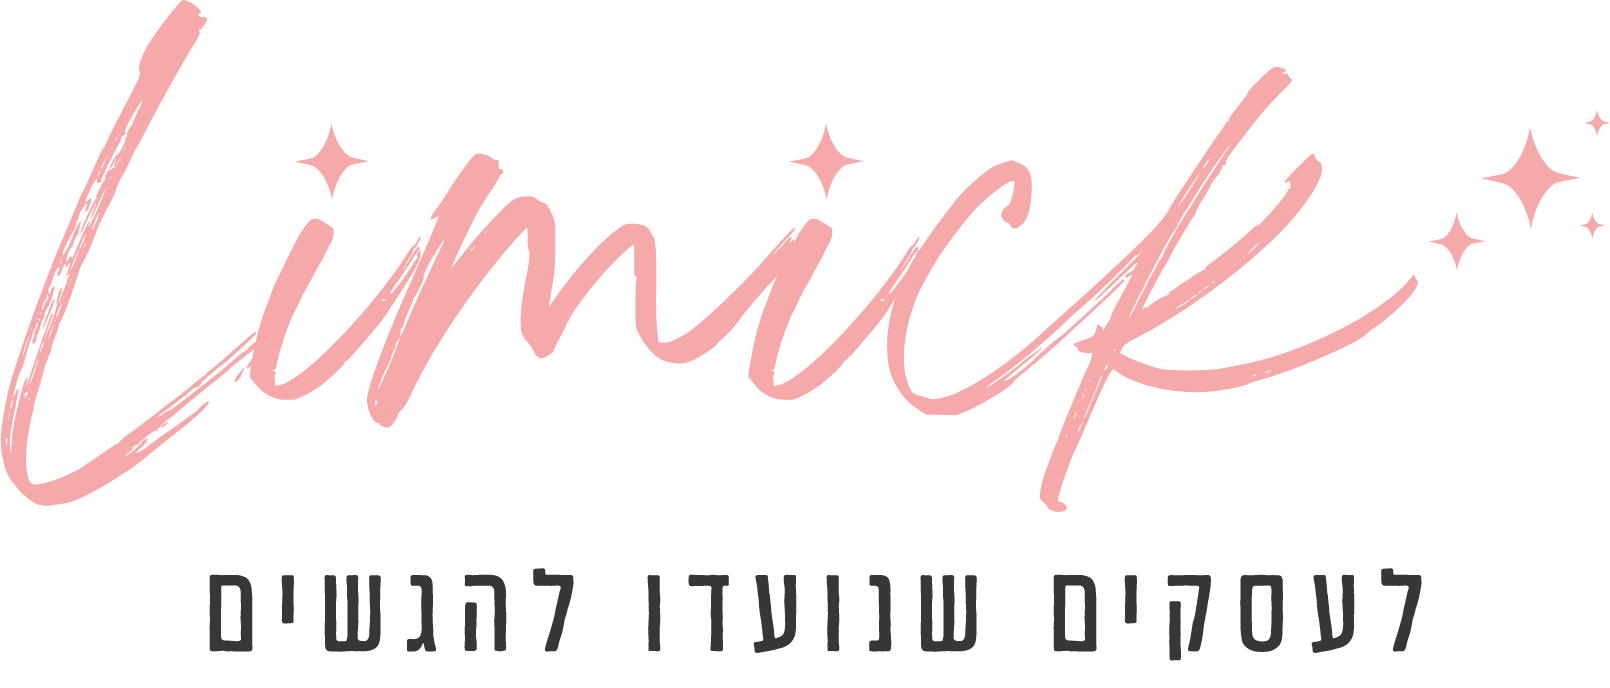 limick logo